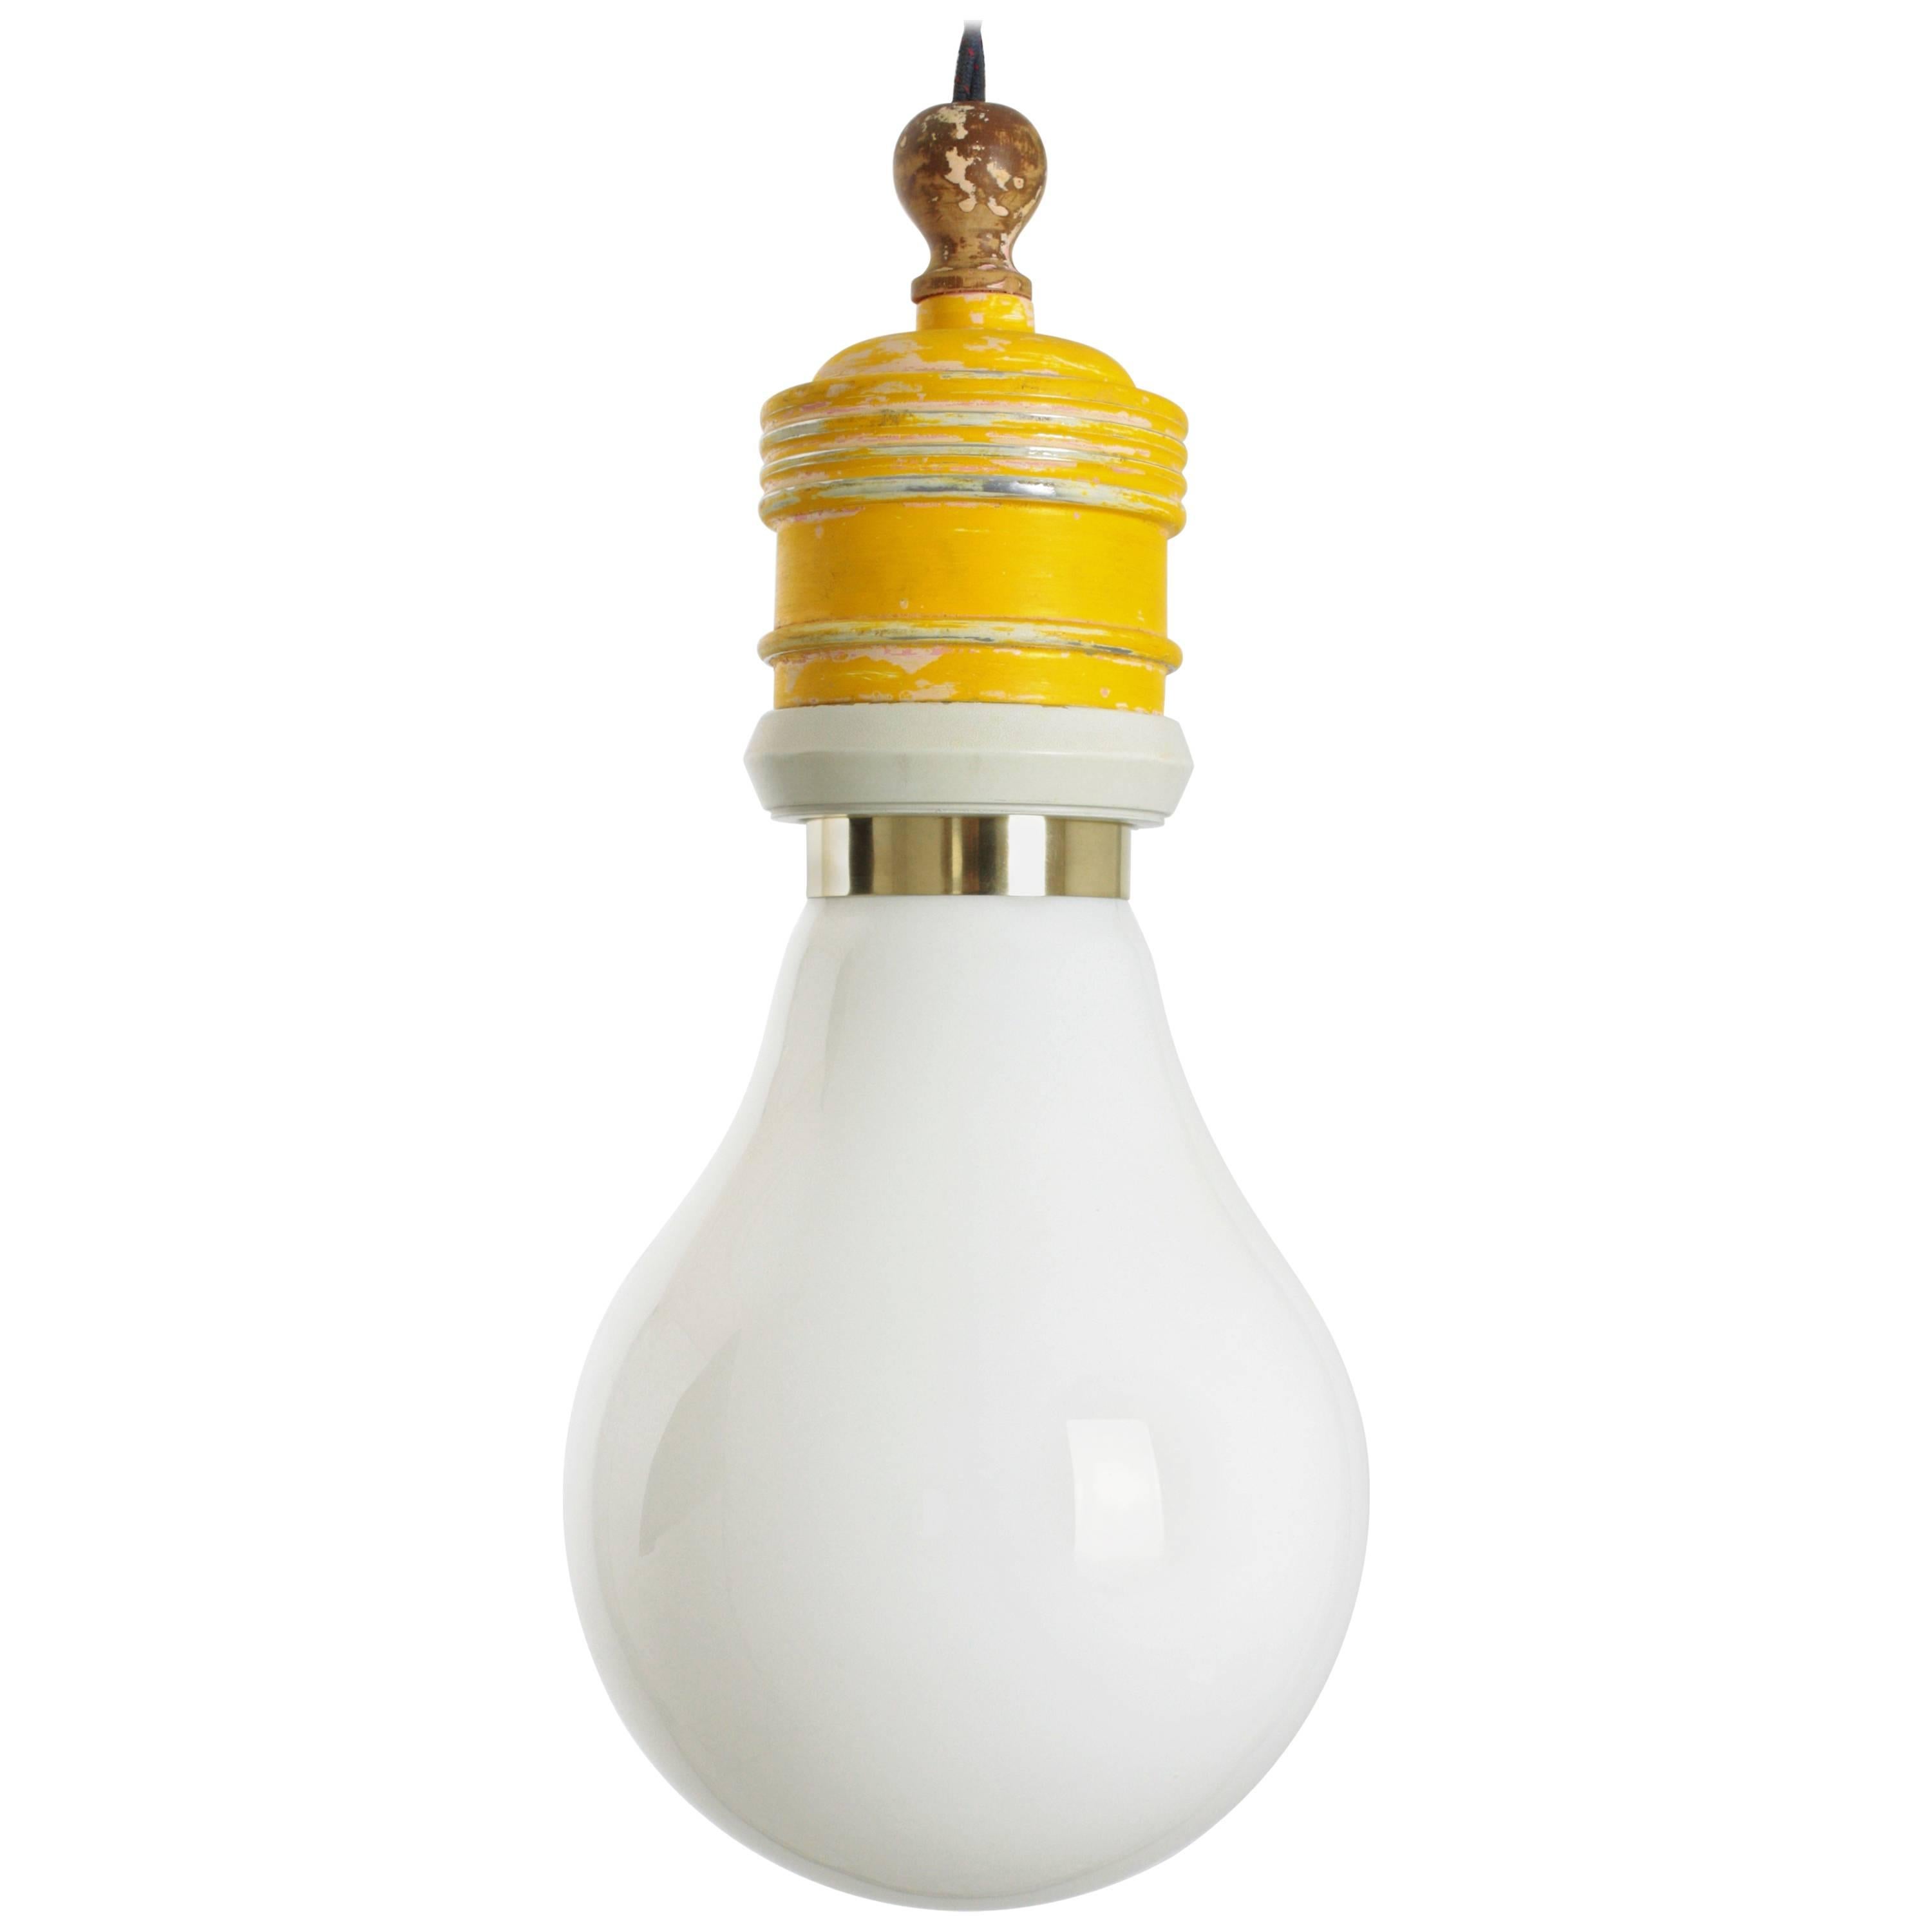 Ingo Maurer Inspired Giant Bulb Light Pendant Lamp by Metalarte  For Sale